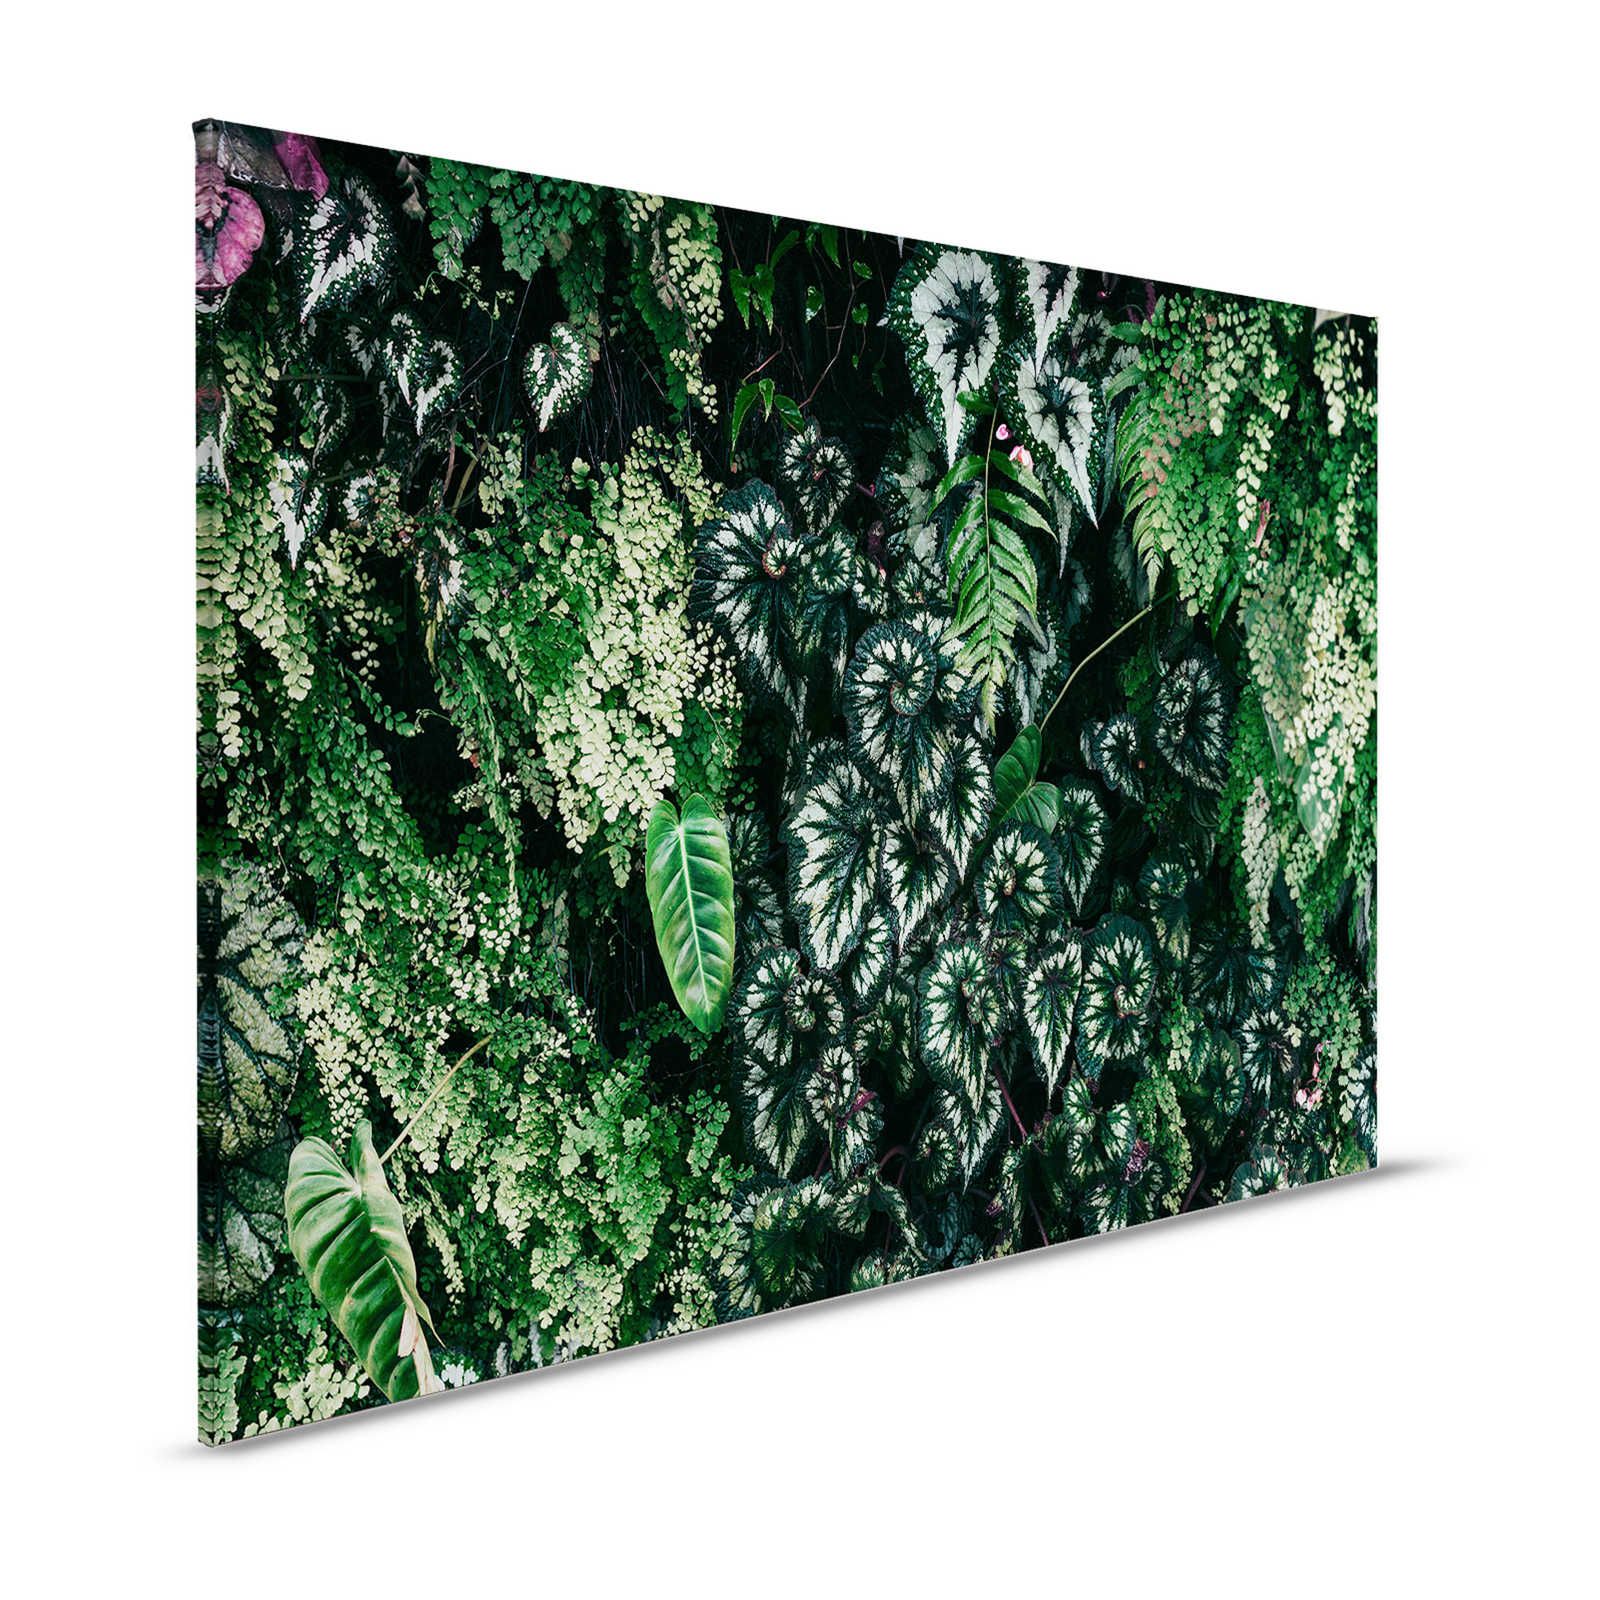 Deep Green 2 - Quadro su tela con foliage, felci e piante pendenti - 1,20 m x 0,80 m
